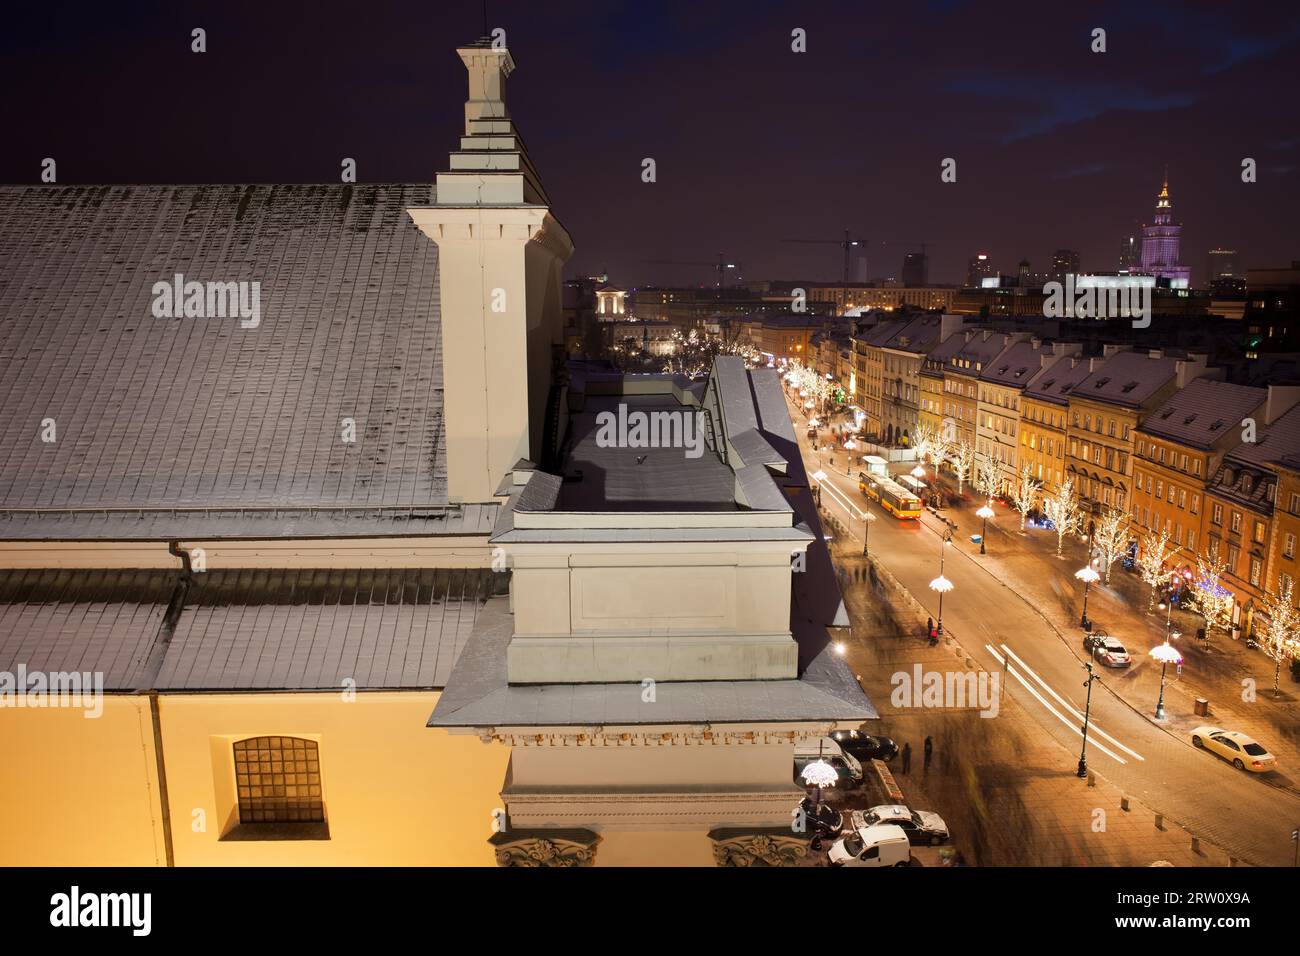 Poland, capital city of Warsaw, St. Anne Church and Krakowskie Przedmiescie street by night from above Stock Photo